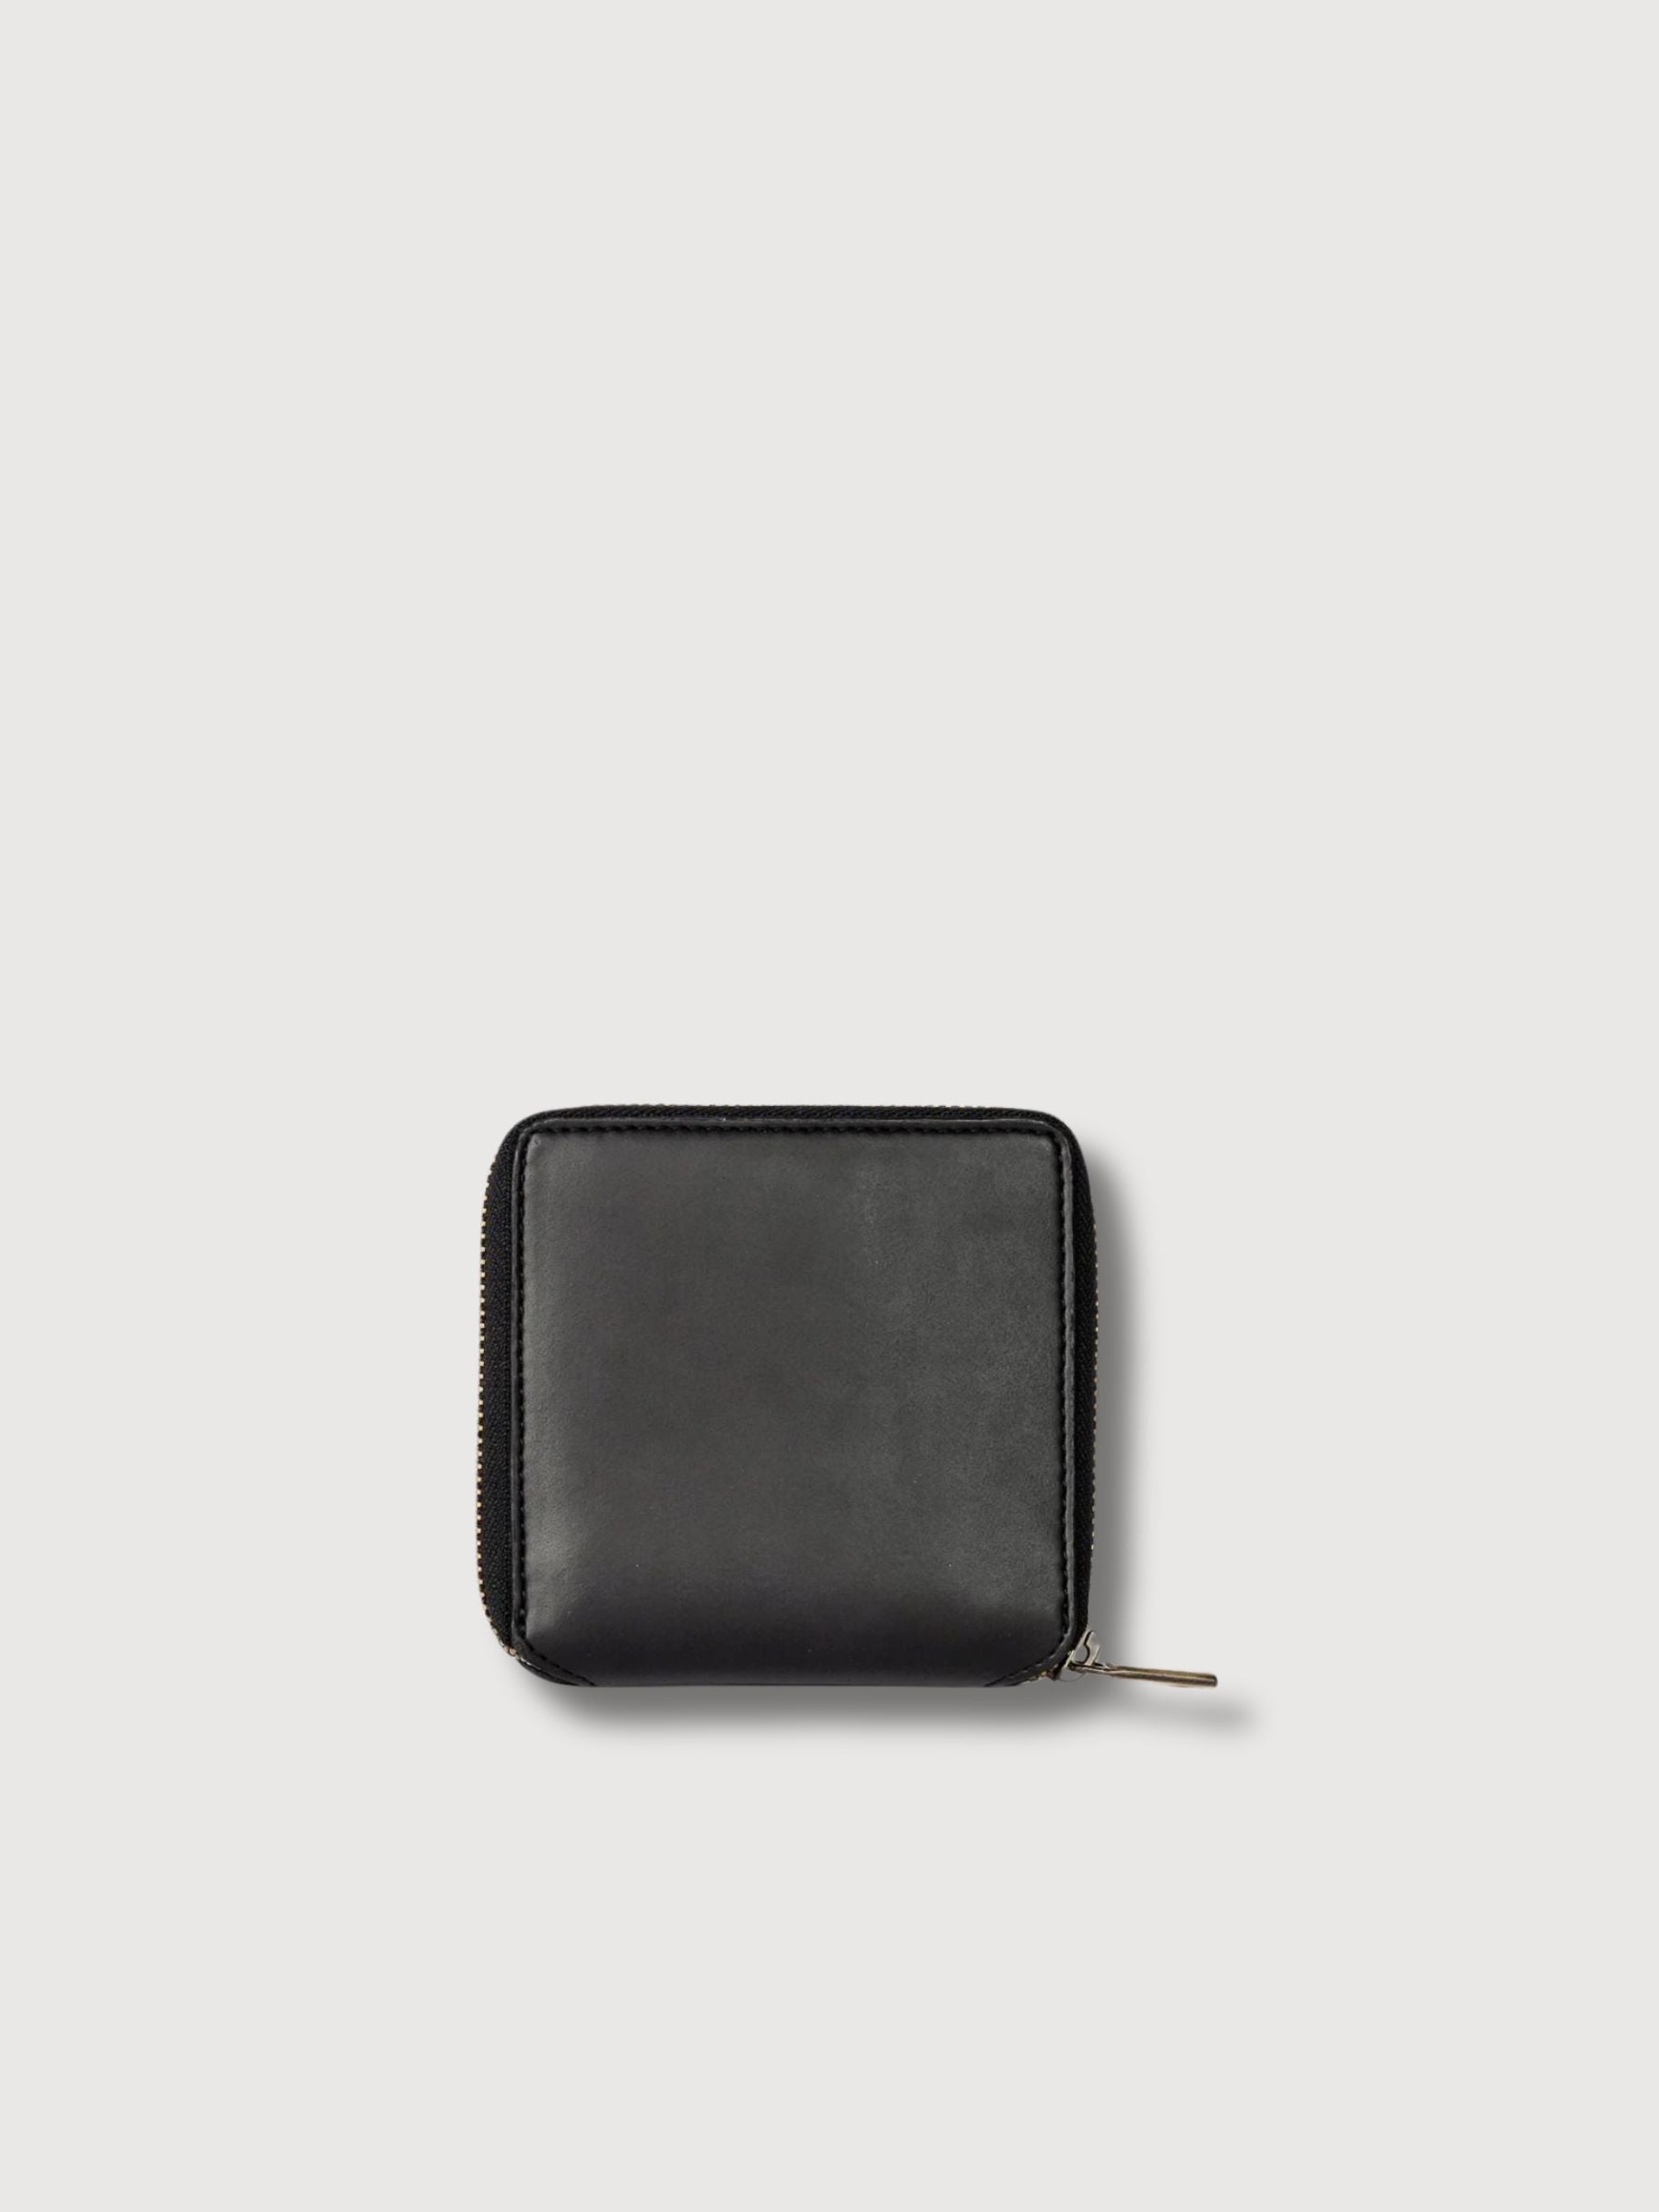 Sonny Square Wallet Black Apple Skin | O My Bag